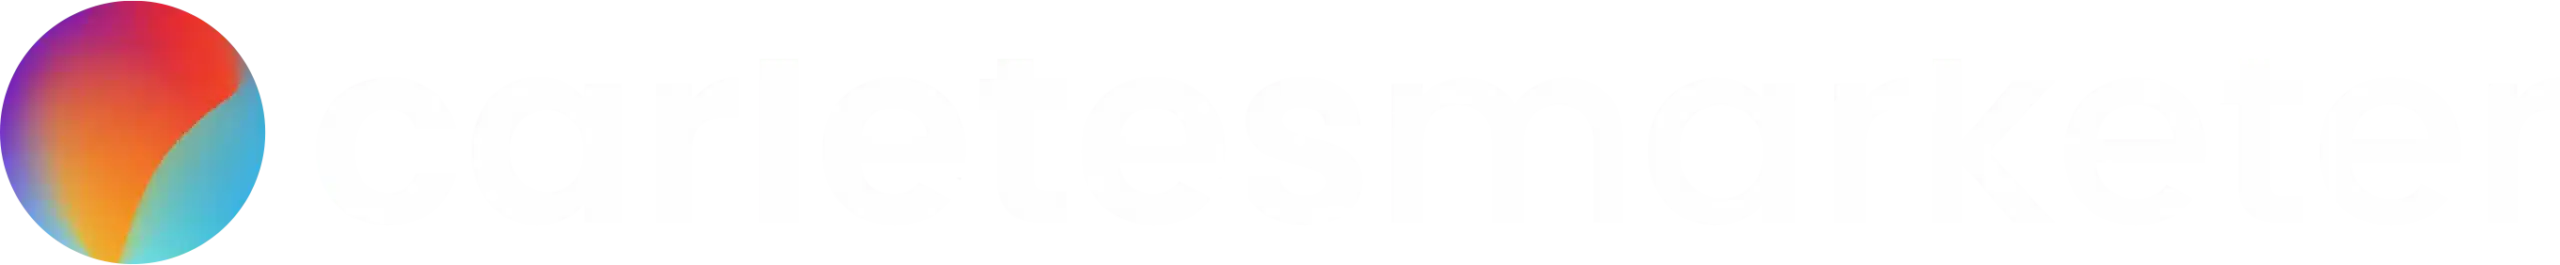 logo carletes marketer